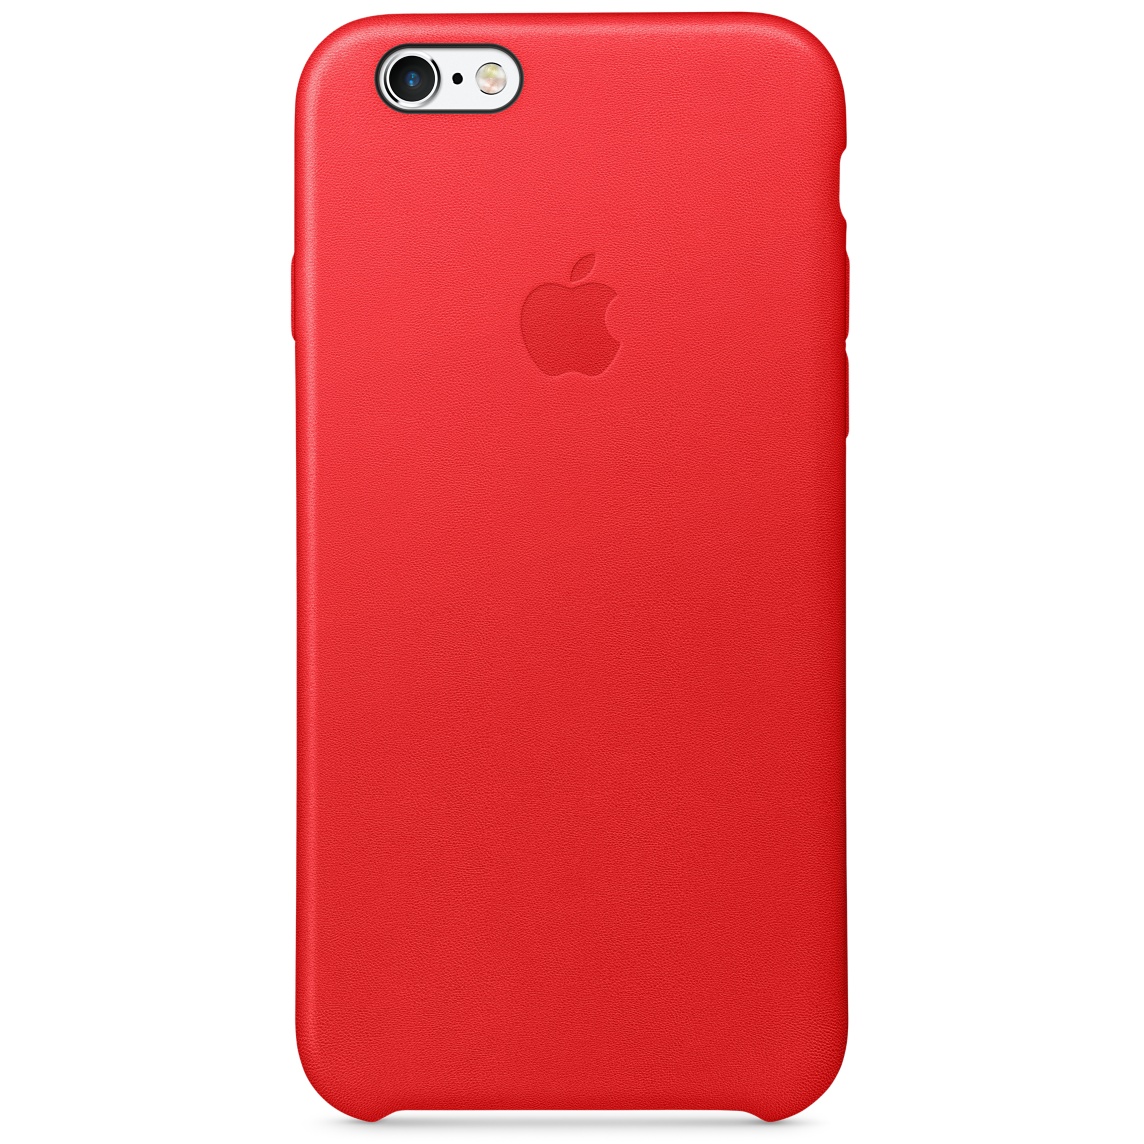 Raudonas „iPhone 6s“ dėklas